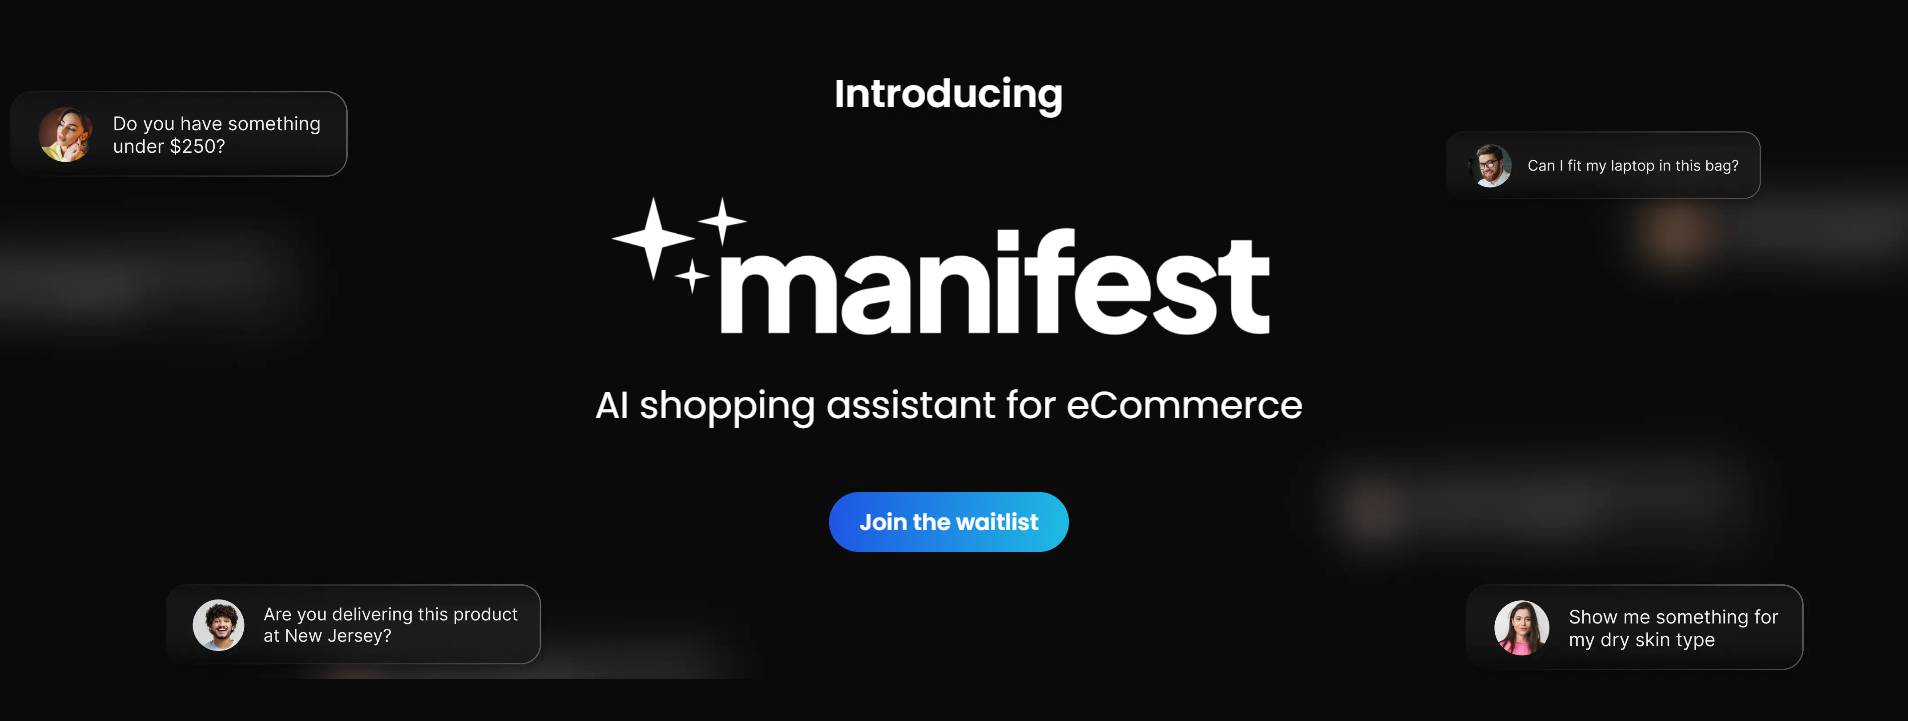 Manifest AI - приложение Shopify, которое поможет покупателям найти соответствующие продукты и информацию